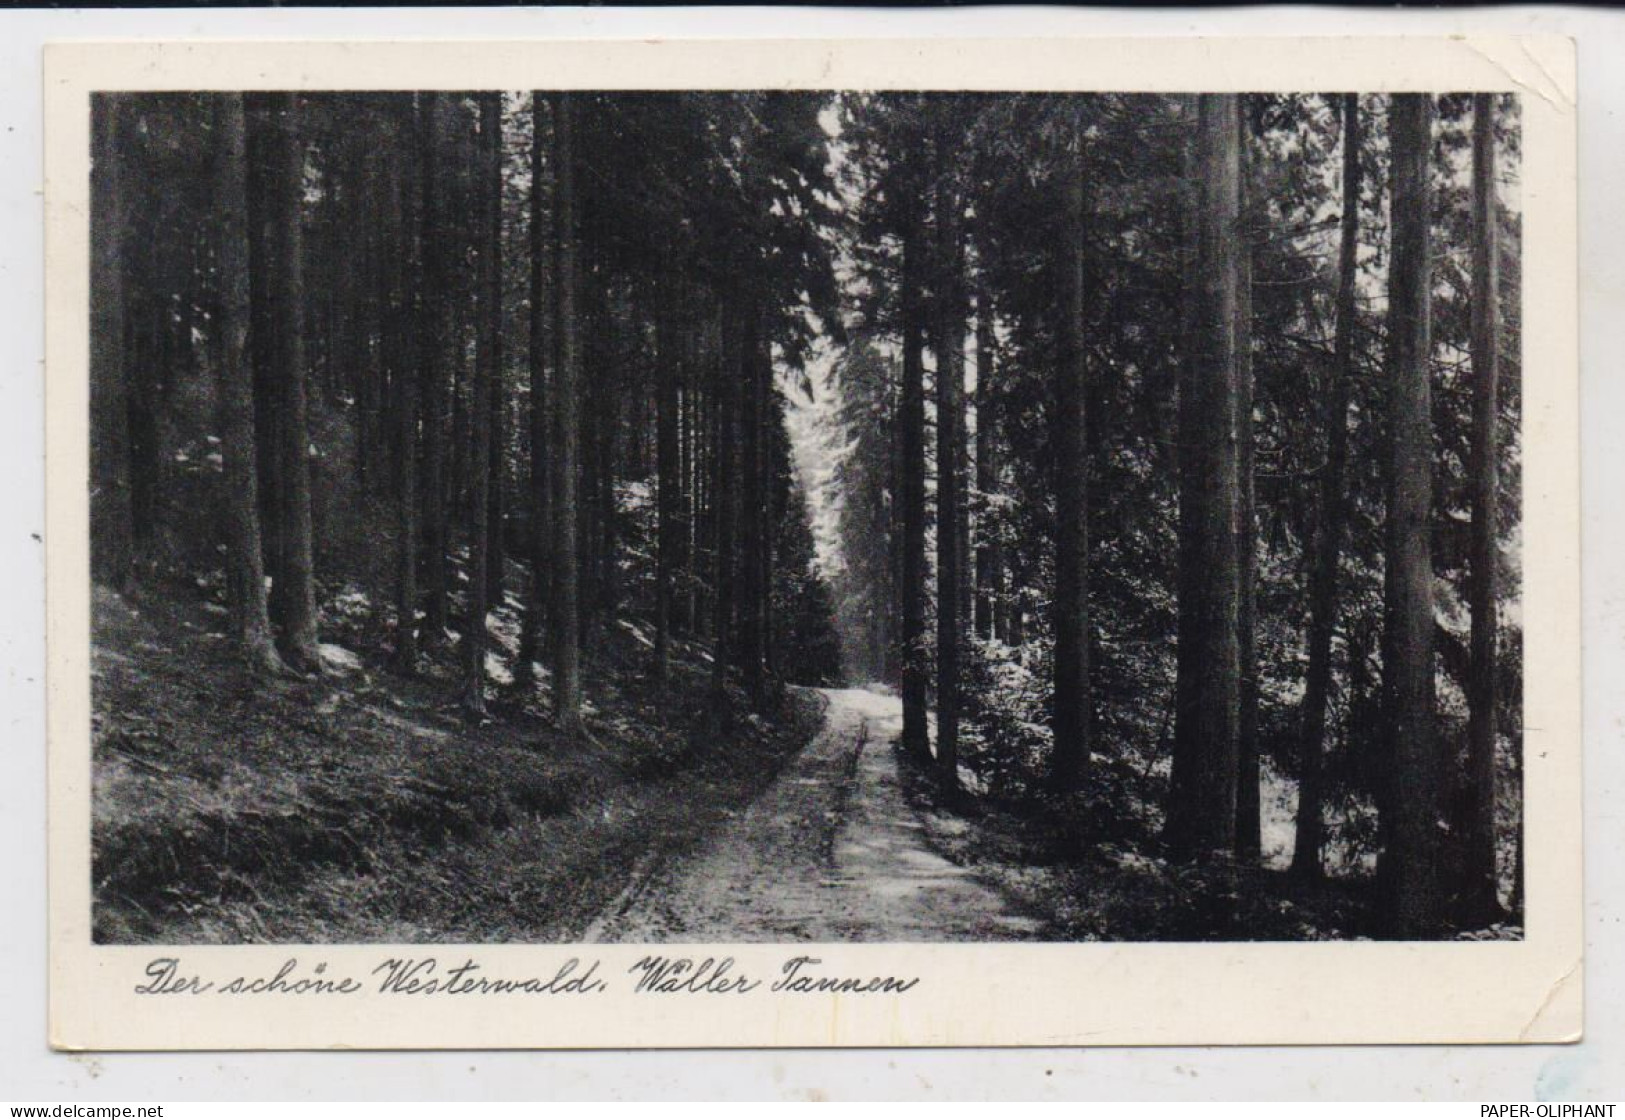 5439 BAD MARIENBERG - UNNAU - STANGENROD, Postgeschichte, Landpoststempel, 1954 - Bad Marienberg